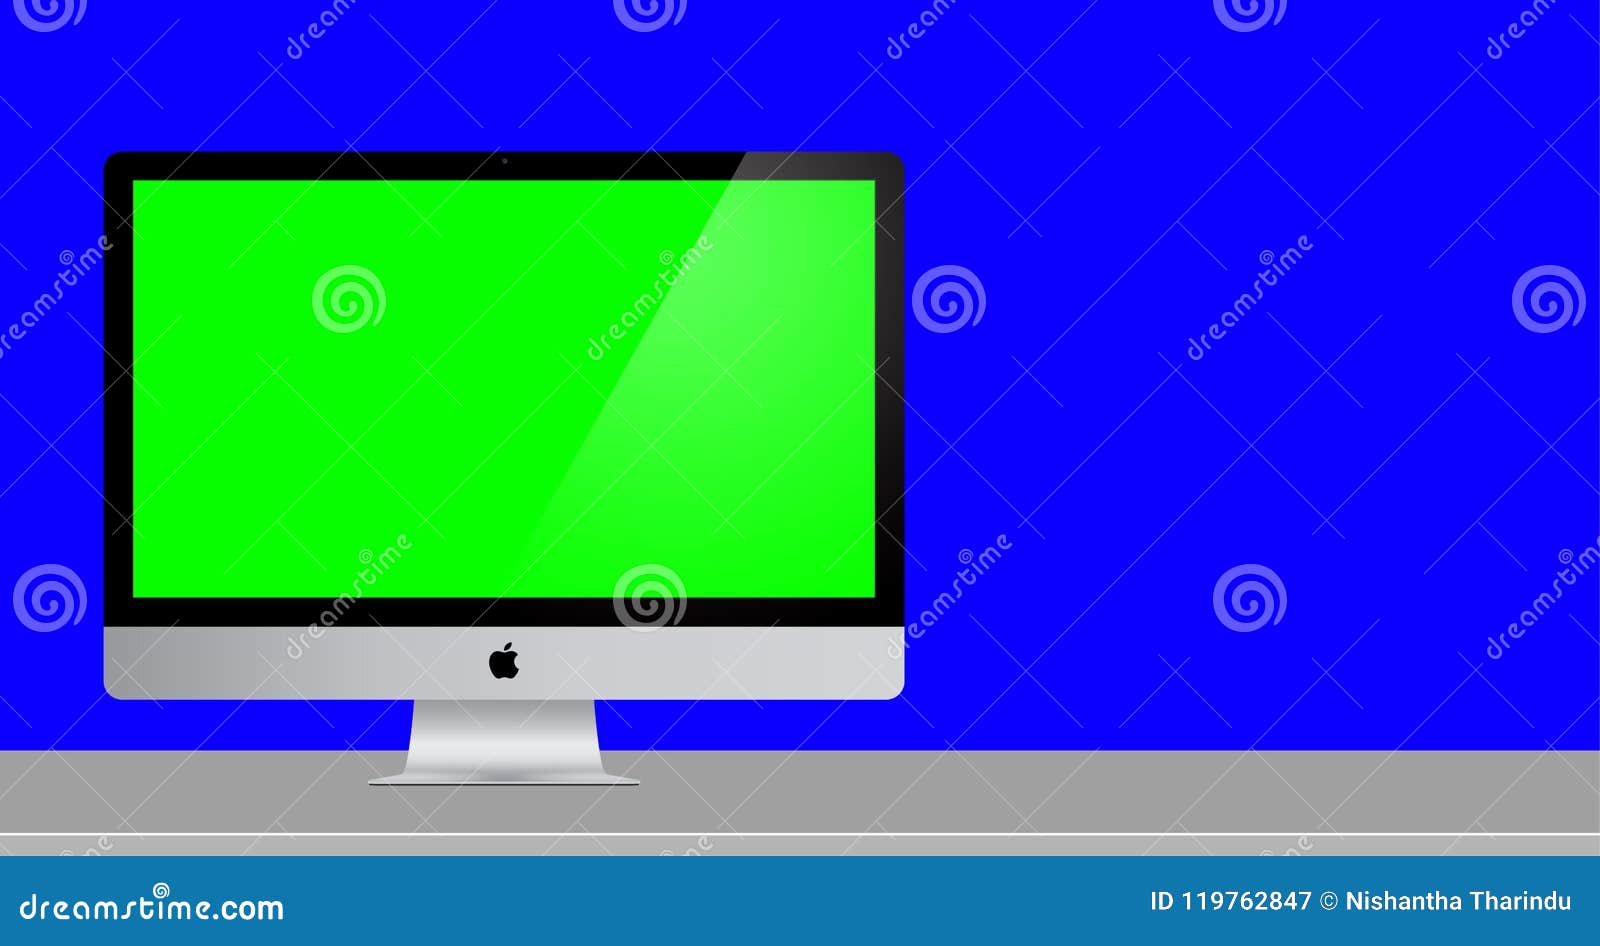 Mac Computer: Mac là một trong những dòng máy tính được đánh giá cao về chất lượng và thiết kế. Ưu điểm của Mac là đơn giản, có thể dễ dàng tương tác và sử dụng các phần mềm chỉ dành cho Mac. Máy tính này đáp ứng hầu hết nhu cầu sử dụng đa phương tiện và giải trí của người dùng.